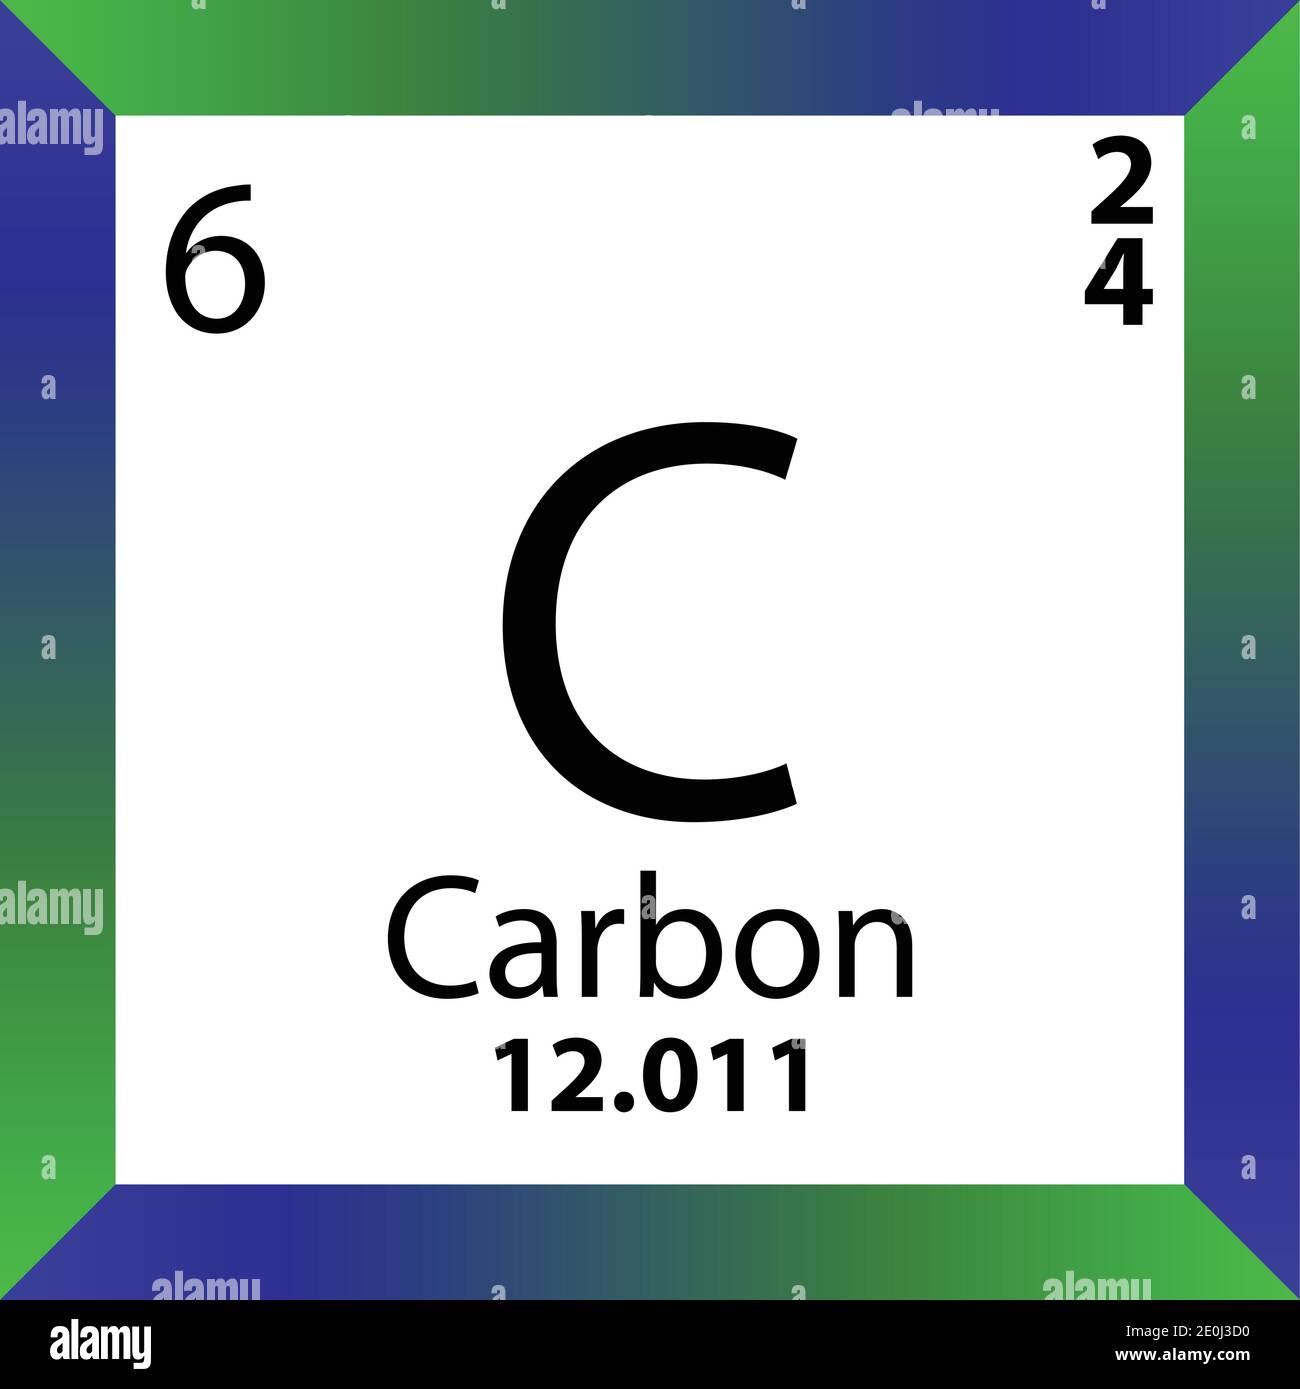 Случайный элемент c. Карбон химический элемент.